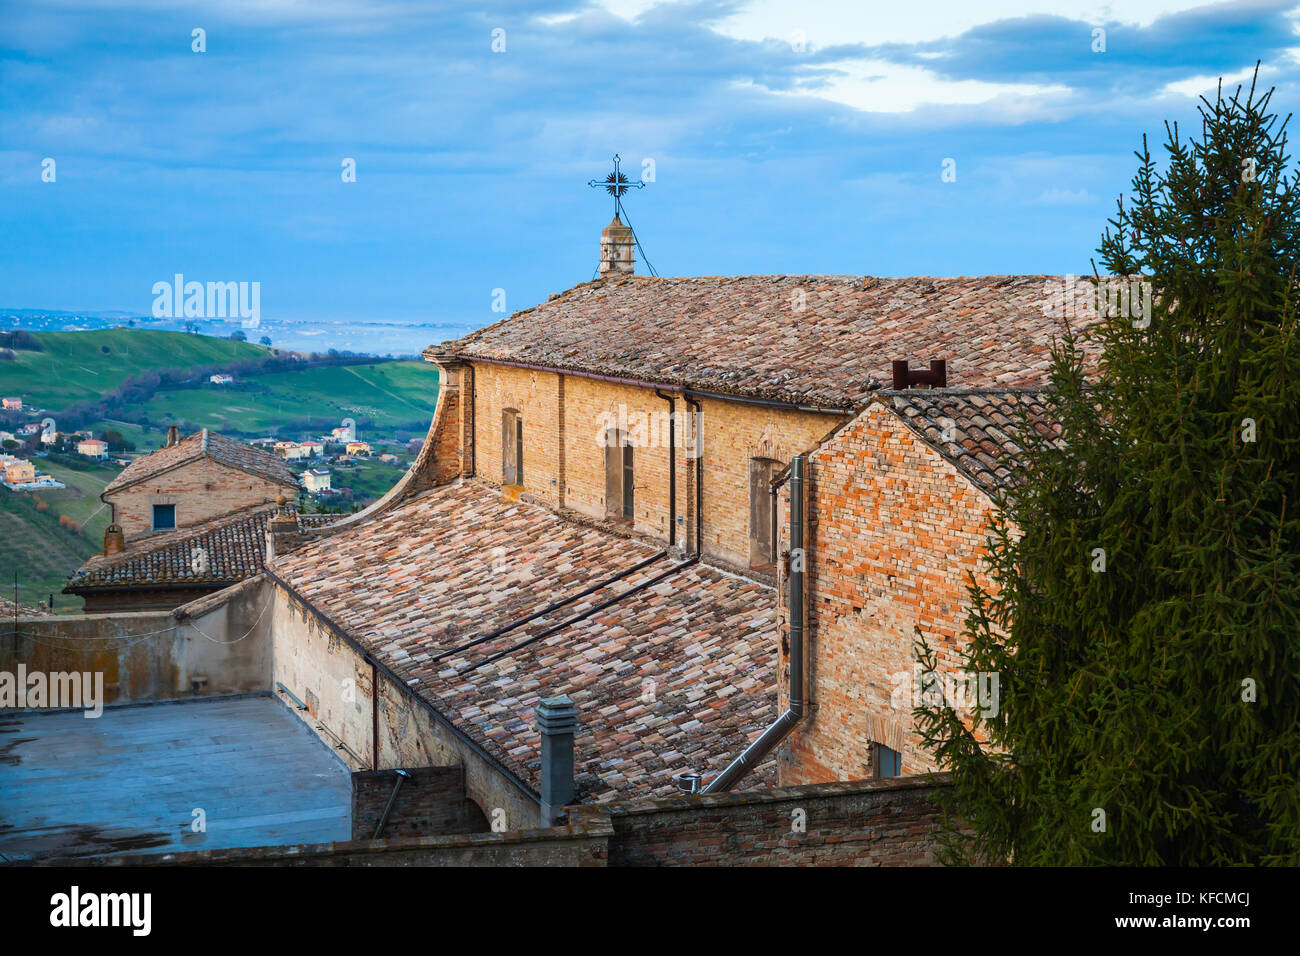 Chiesa Del Carmine. Catholic church in Fermo, region of Marche, Italy Stock Photo